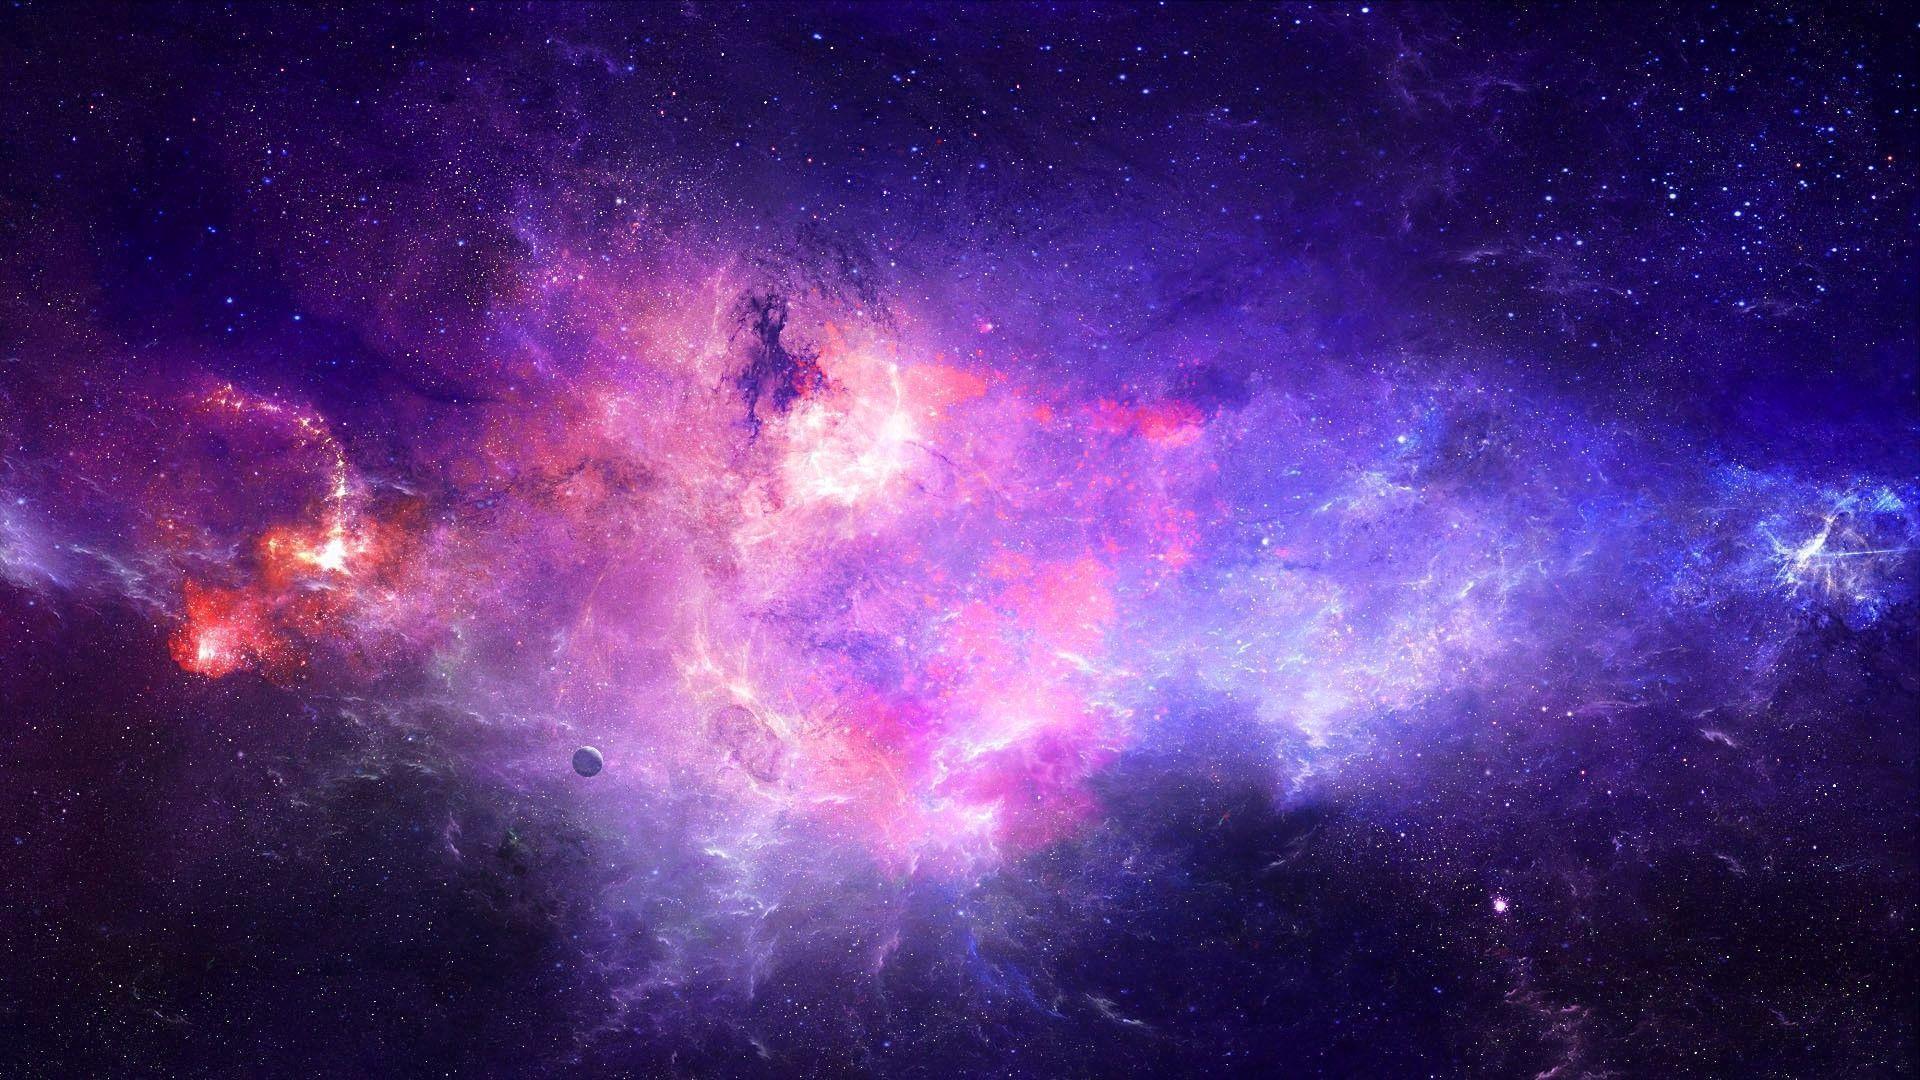 Hình nền máy tính vũ trụ trên Tumblr sẽ khiến bạn thấy như đang ngắm vô số hành tinh xa xôi, tinh tú lấp lánh và ngôi sao chói lóa. Từng chi tiết huyền ảo trên hình ảnh sẽ khiến cho bộ phim ảnh của bạn trở nên tuyệt đẹp hơn bao giờ hết!